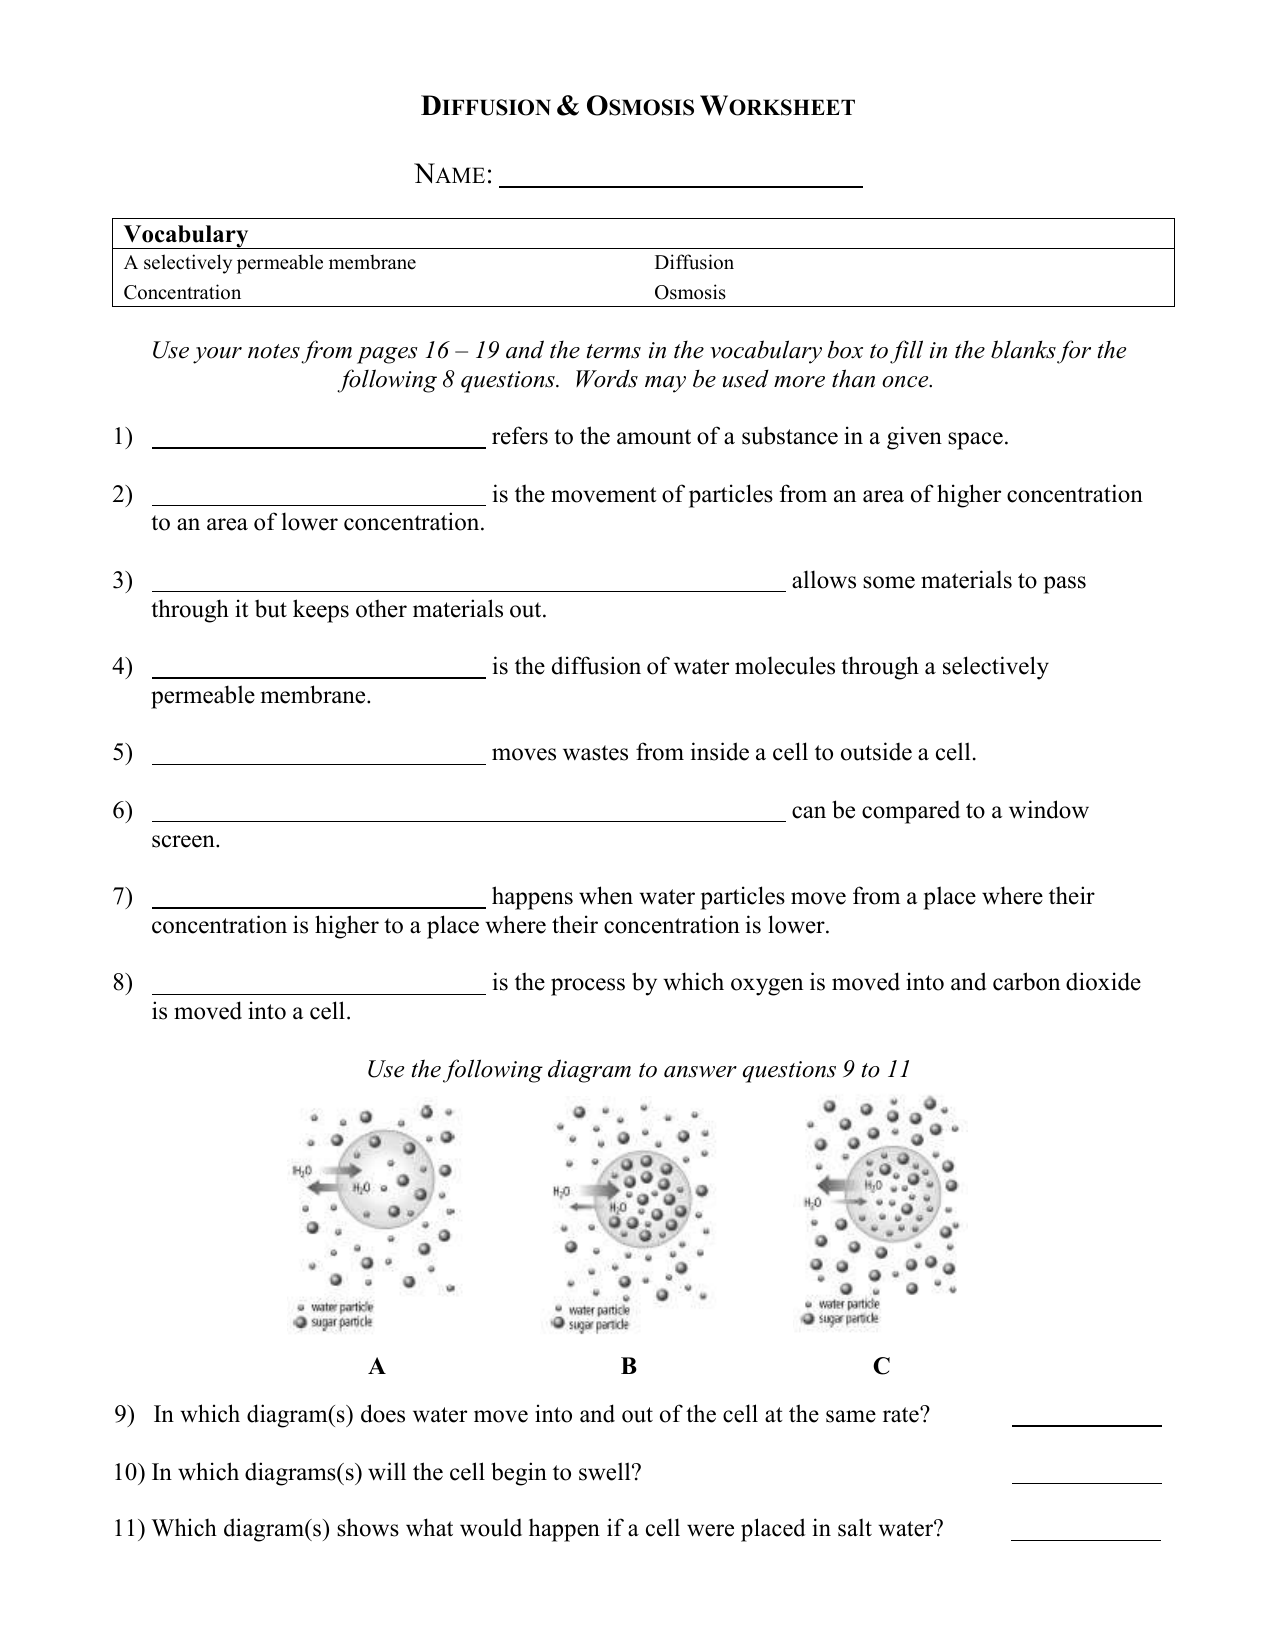 osmosis-practice-worksheet-answer-key-pdf-athens-mutual-student-corner